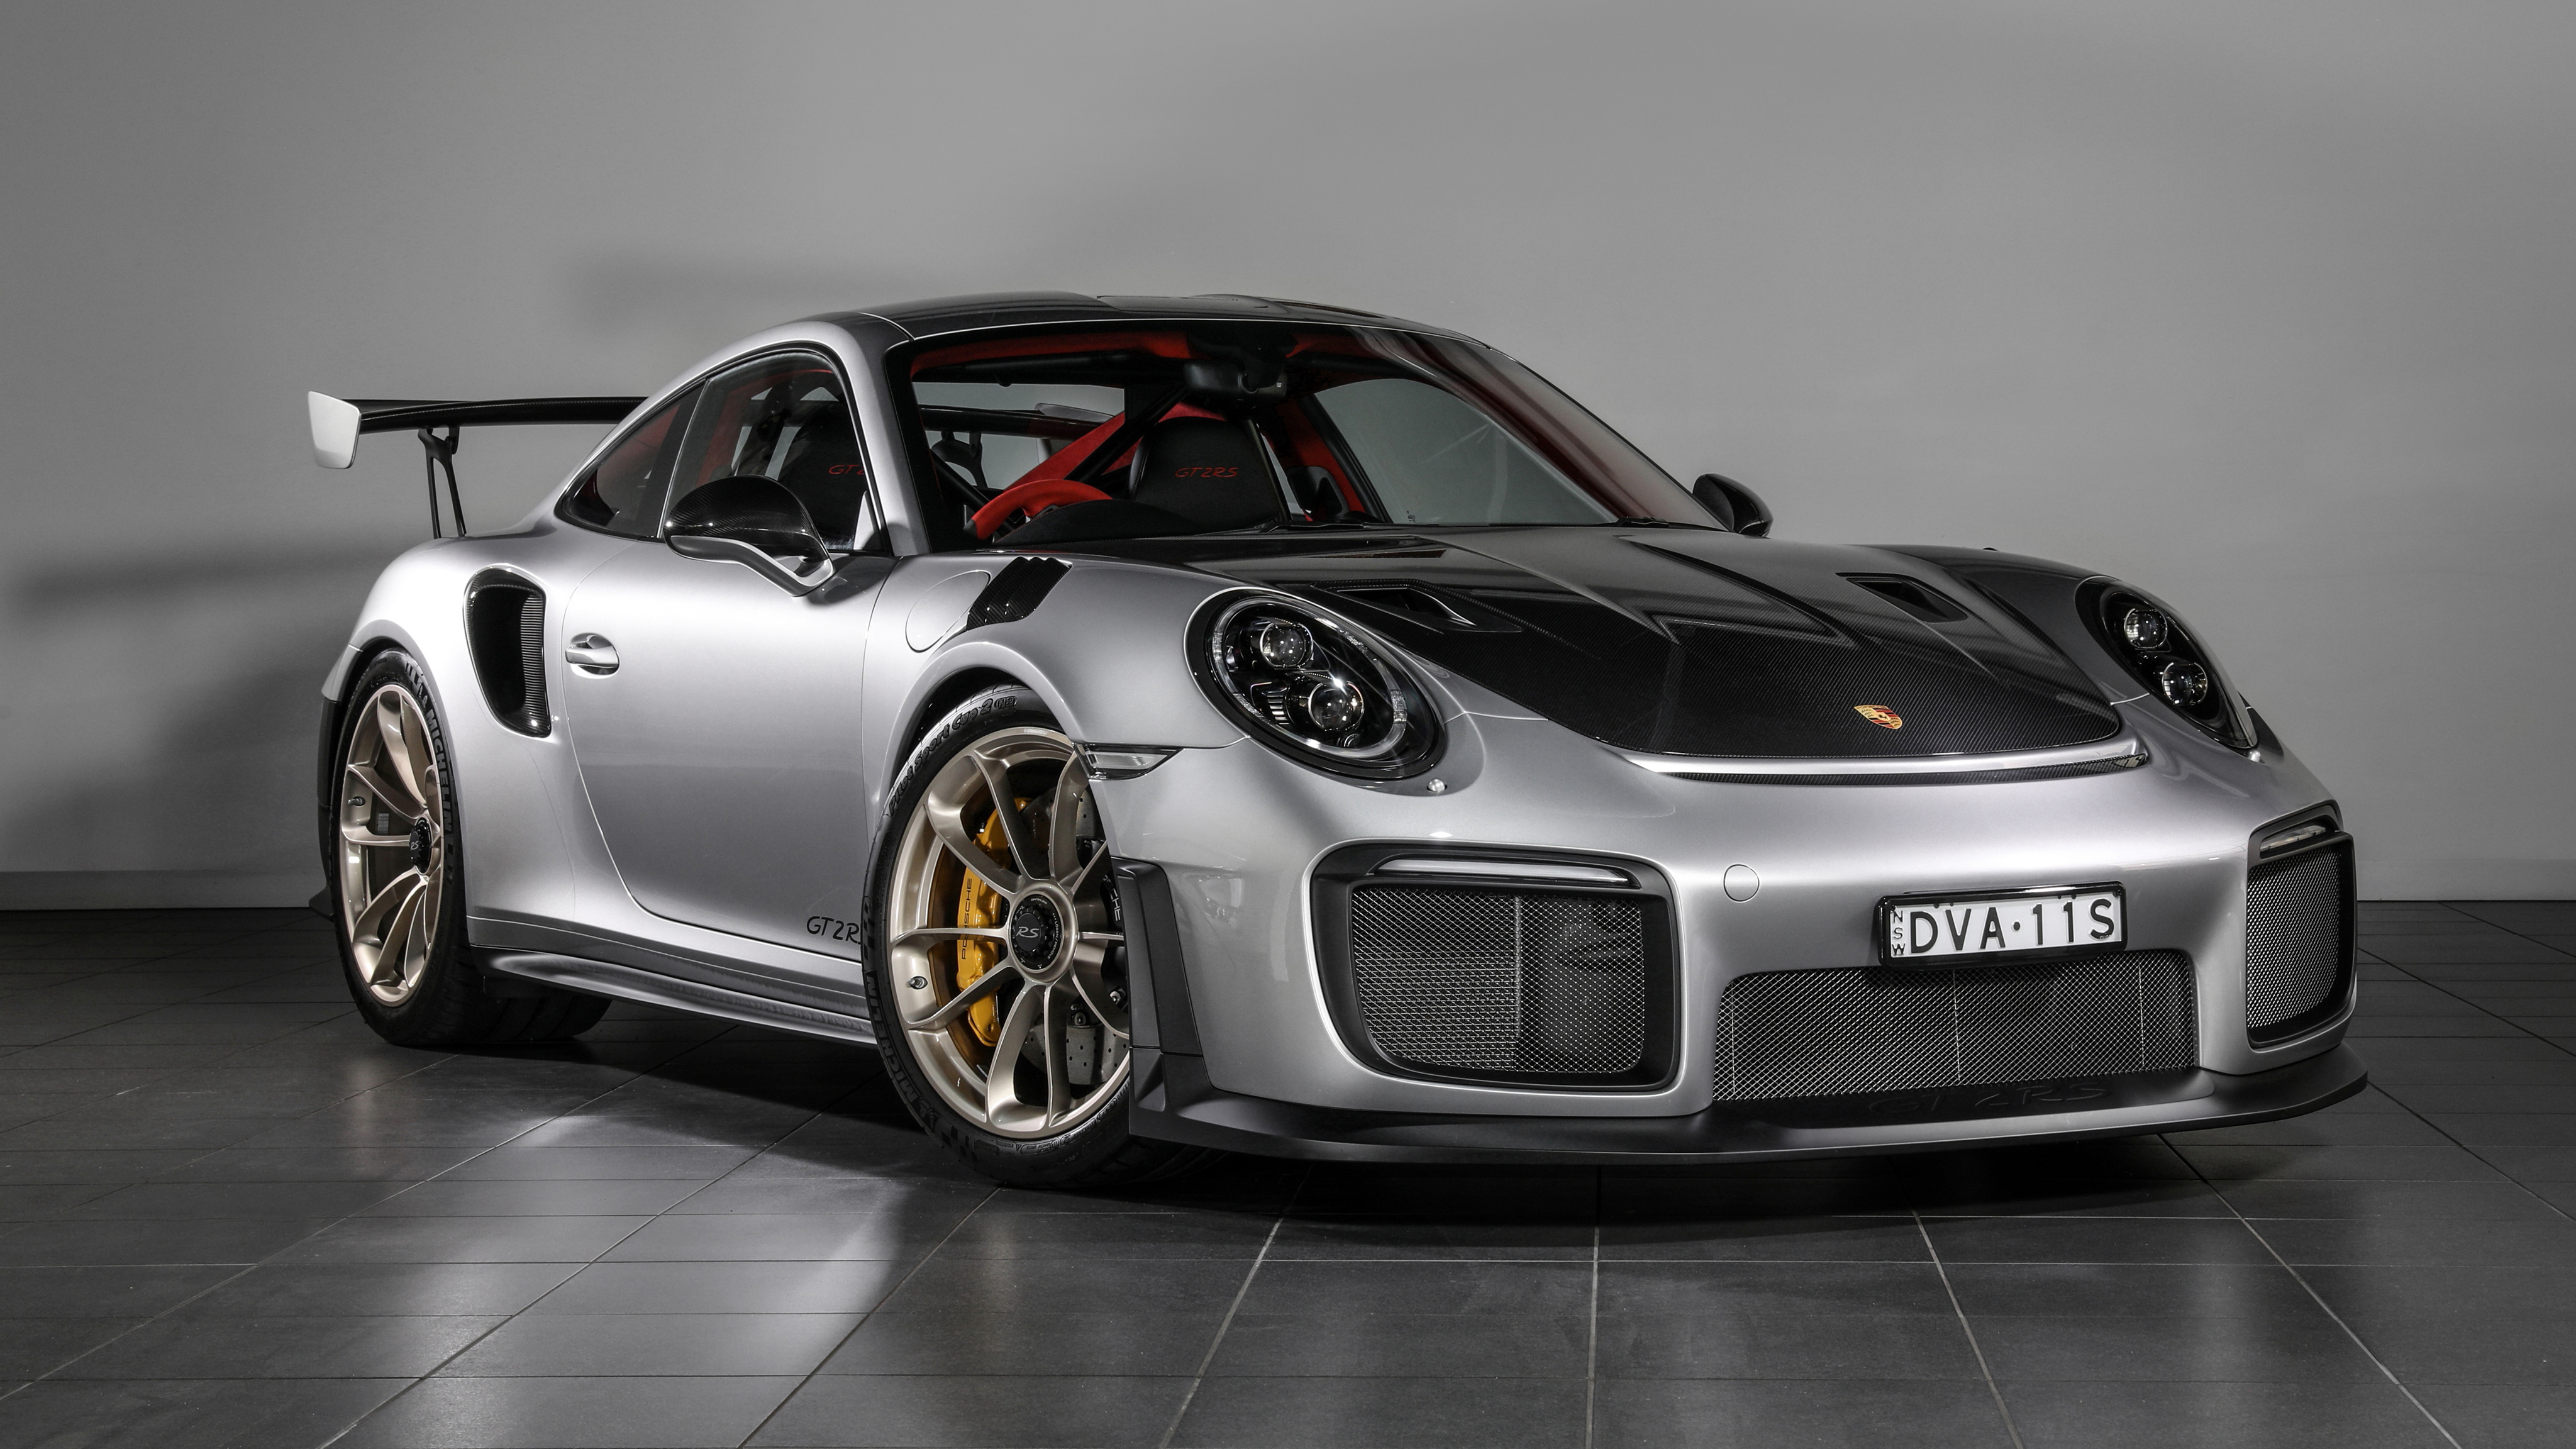 Porsche 911 Gt2 Rs , HD Wallpaper & Backgrounds